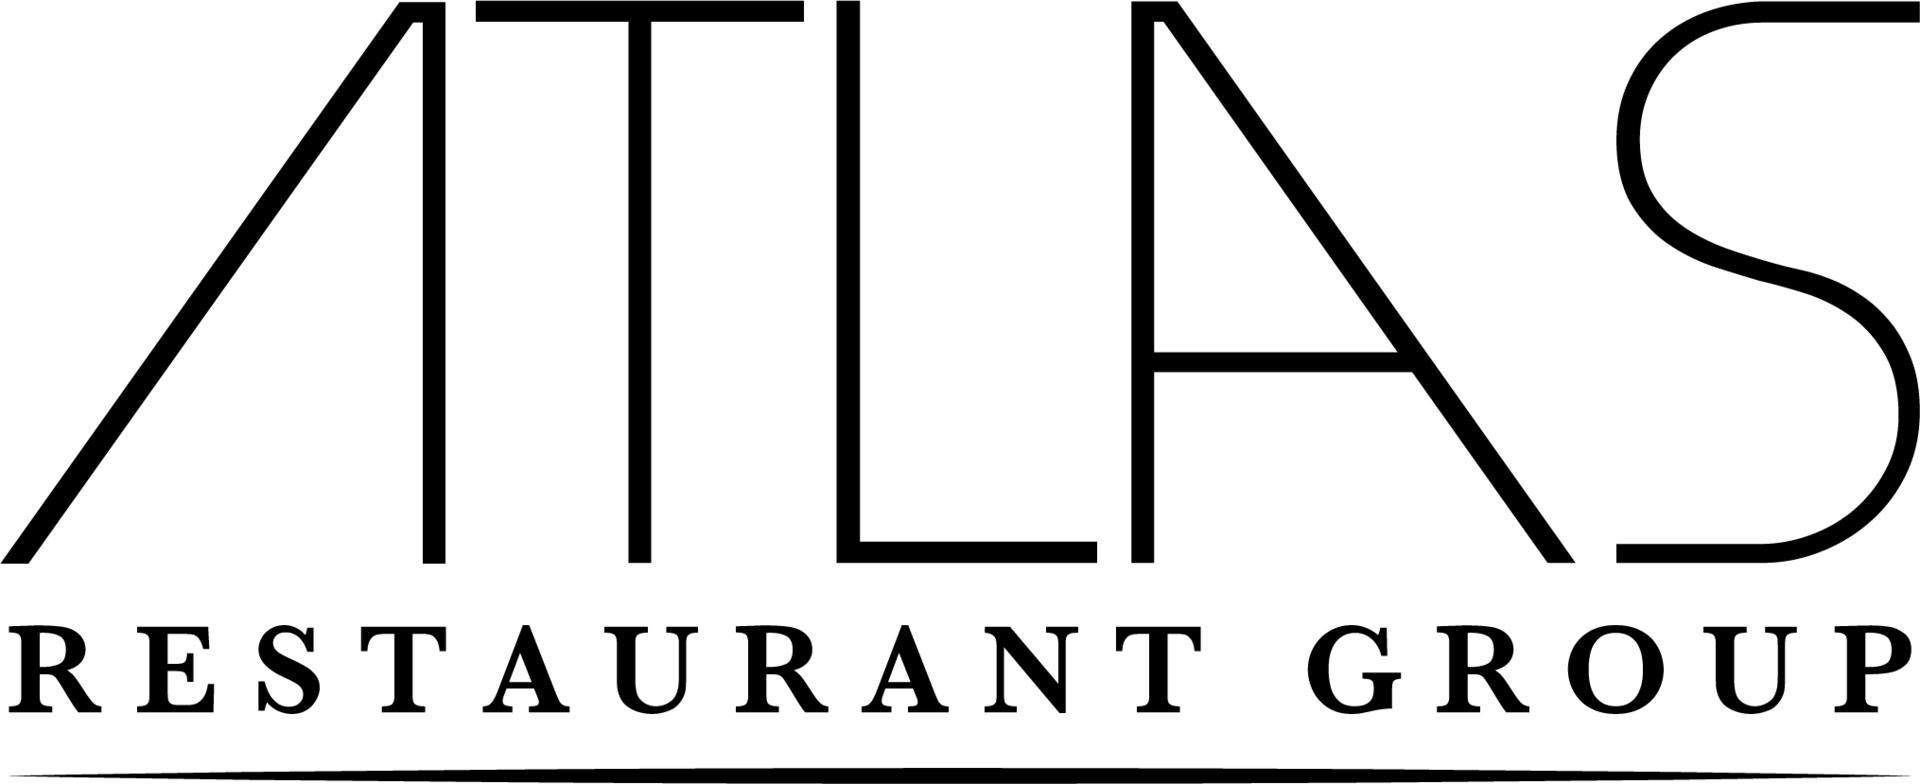 Atlas Restaurant Group